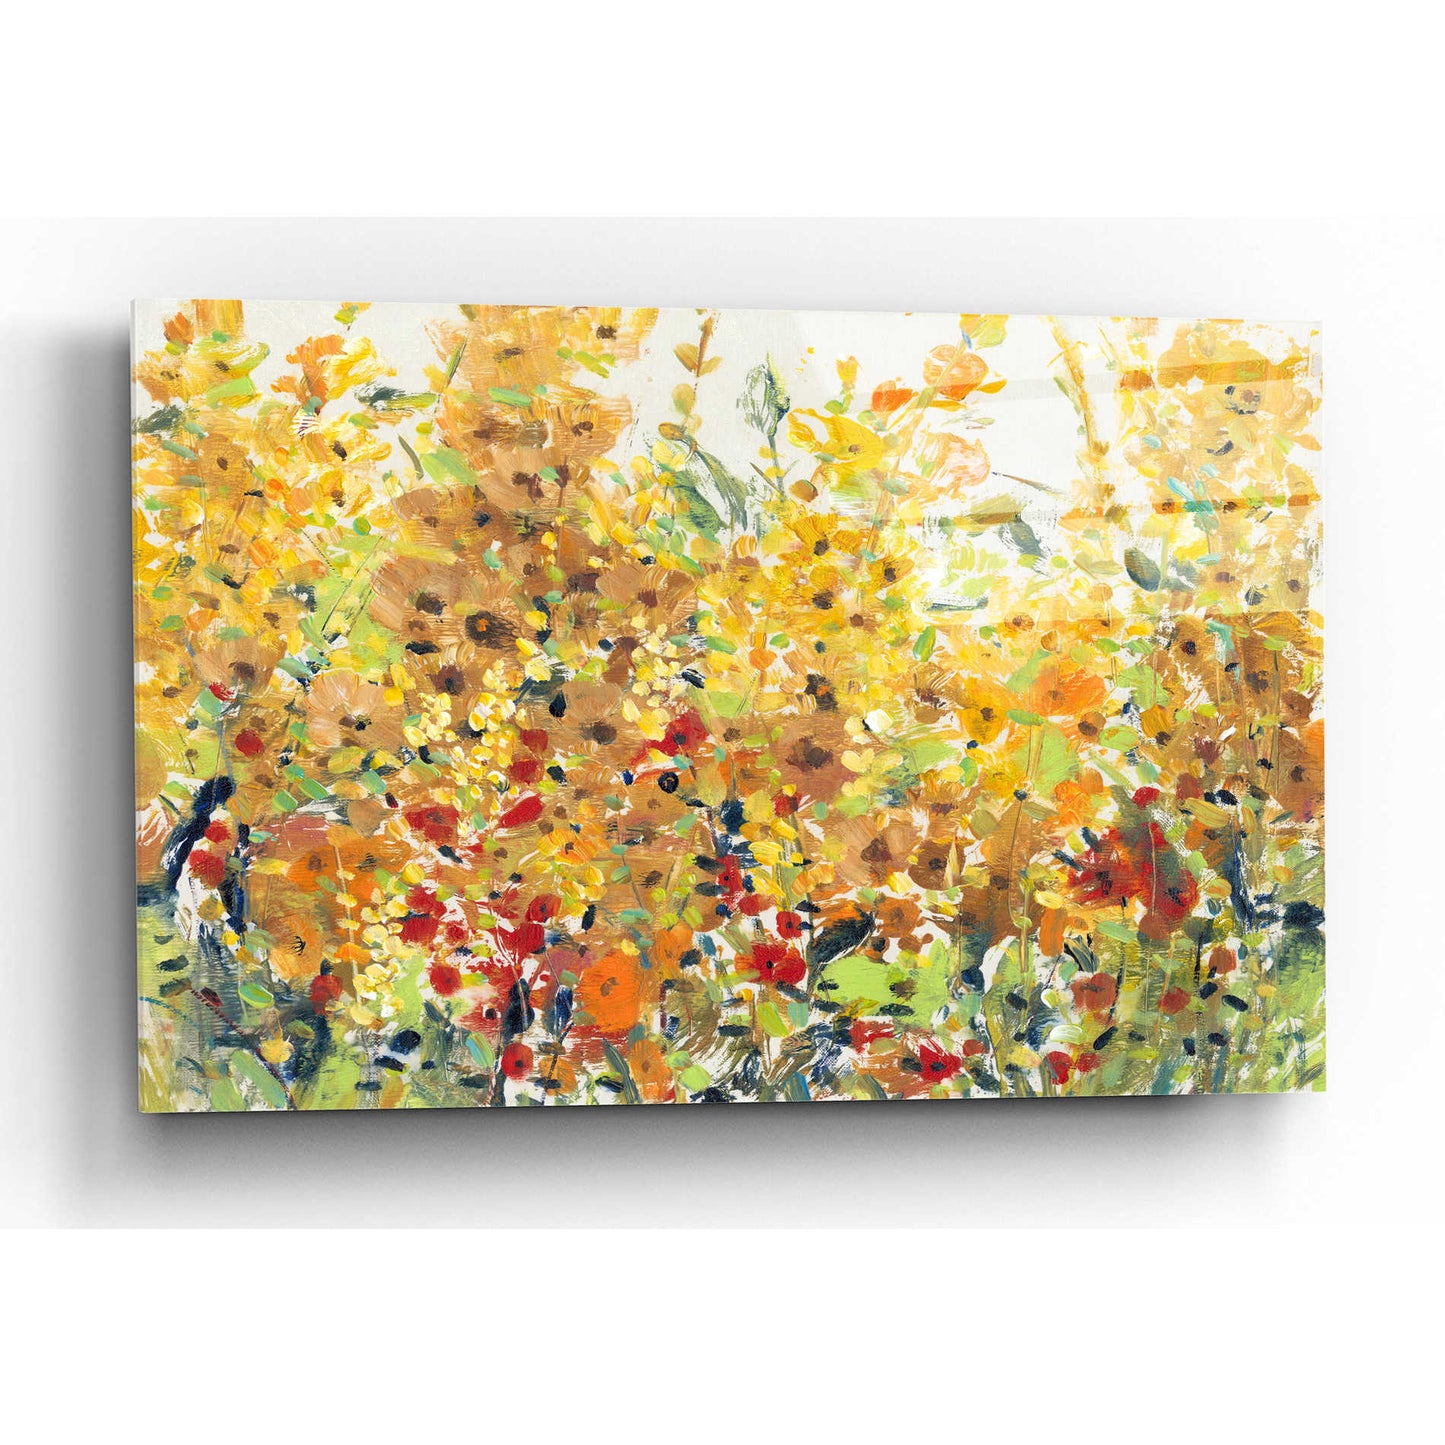 Epic Art 'Golden Summer Garden II' by Tim O'Toole, Acrylic Glass Wall Art,24x16